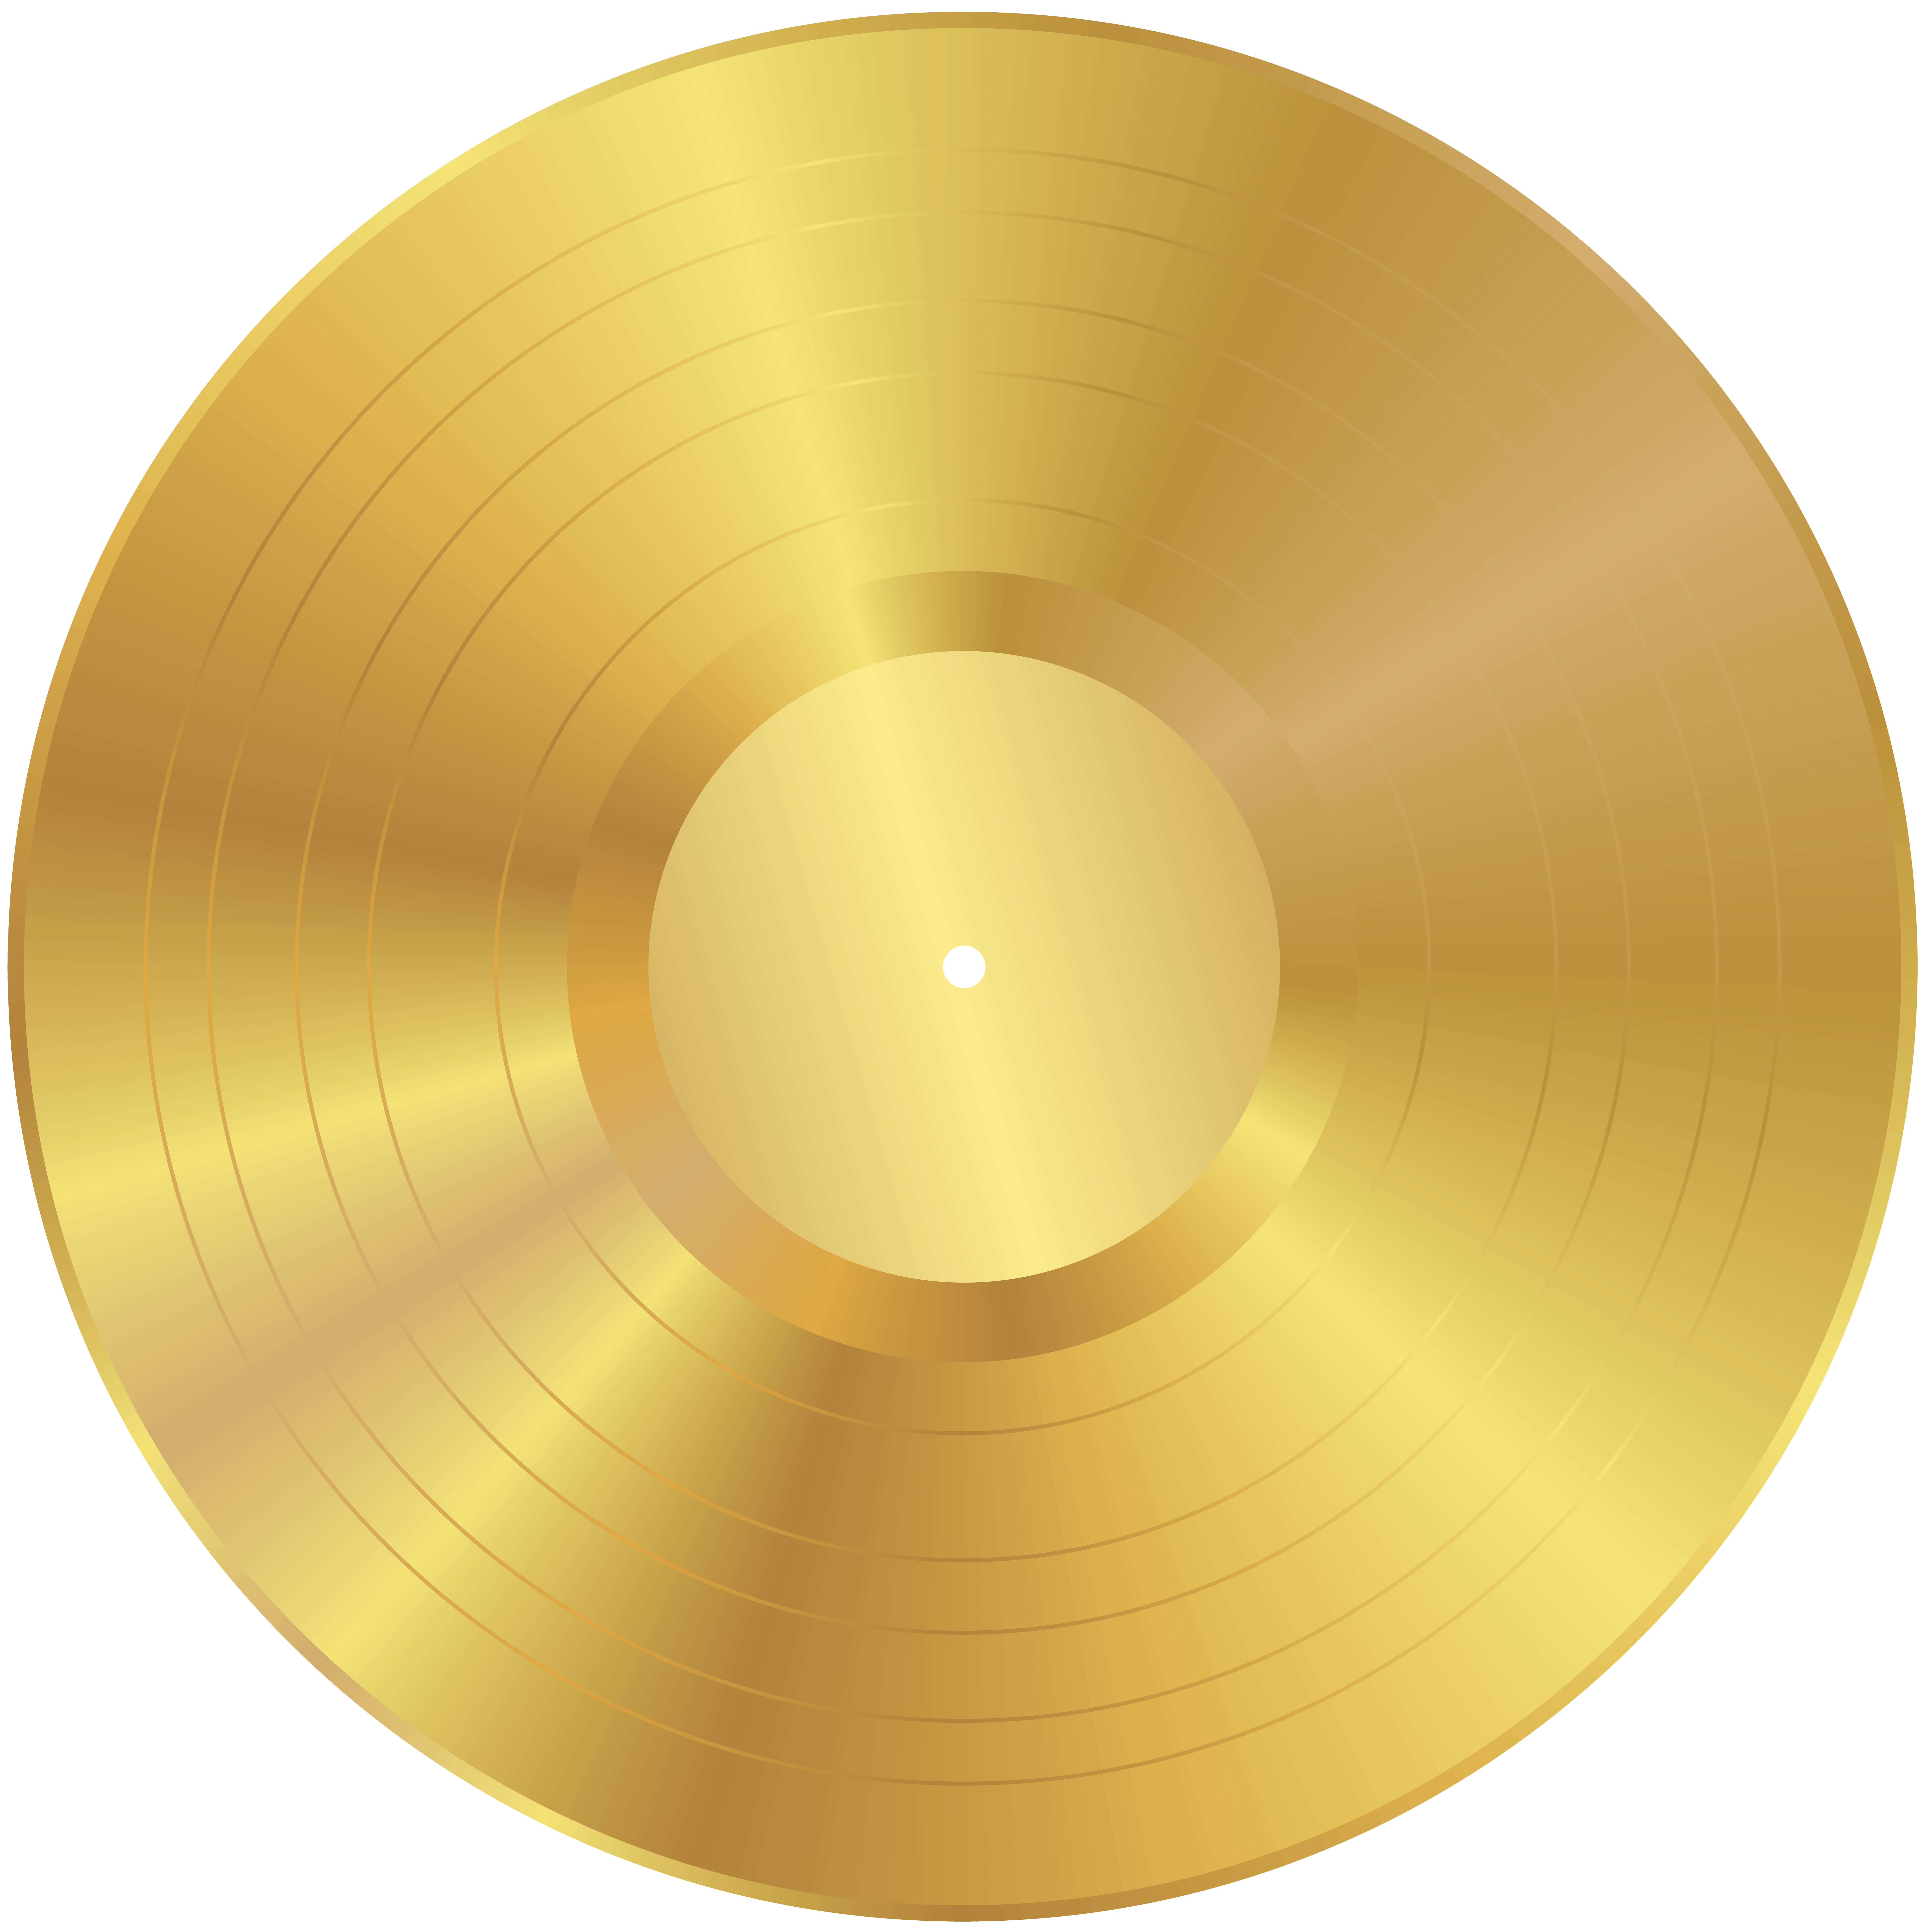 Gold Vinyl Record PNG Clip Art Image.